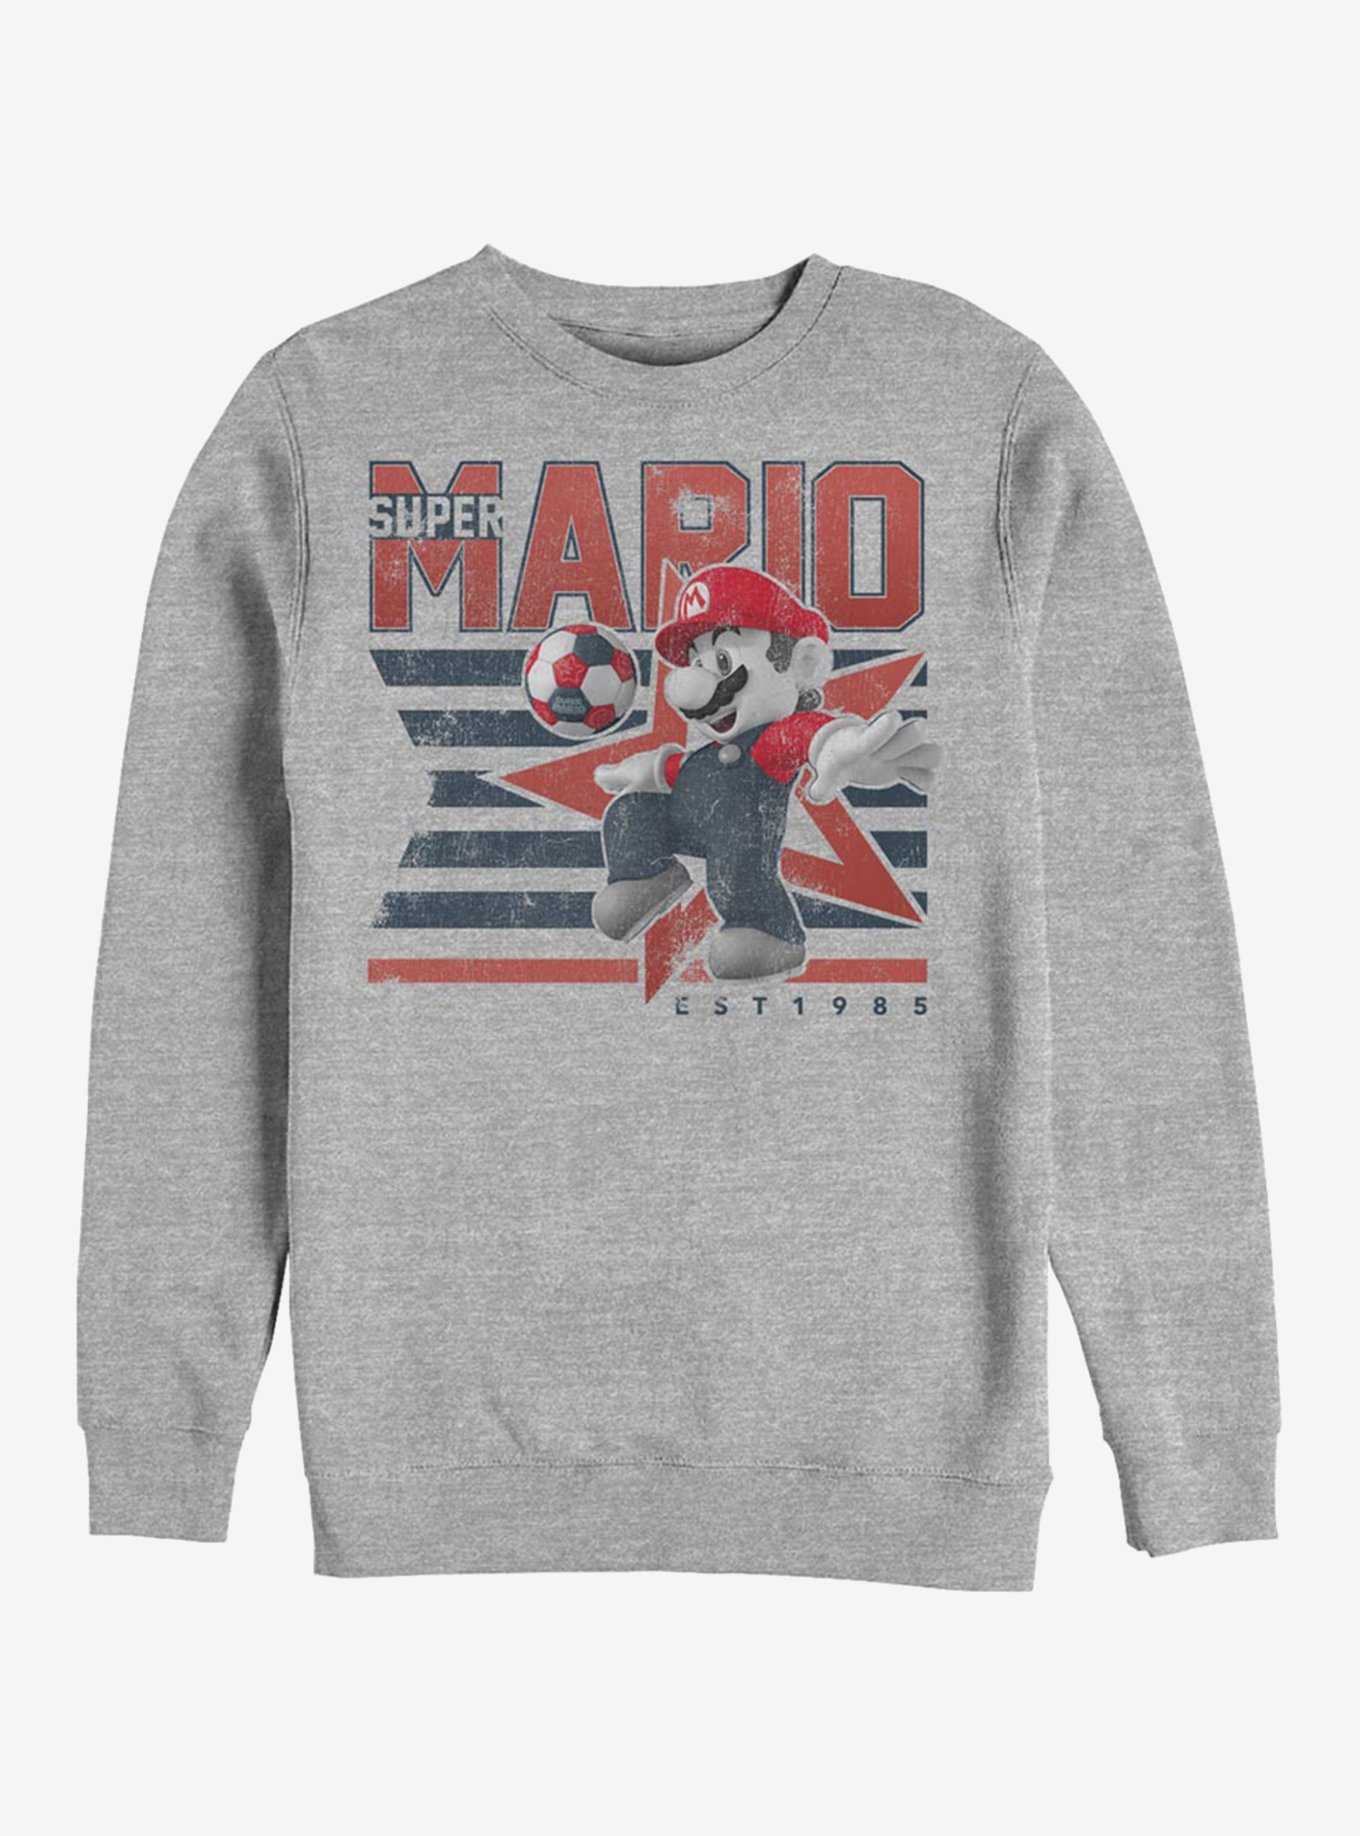 Super Mario Bros. Soccer Star Sweatshirt, , hi-res